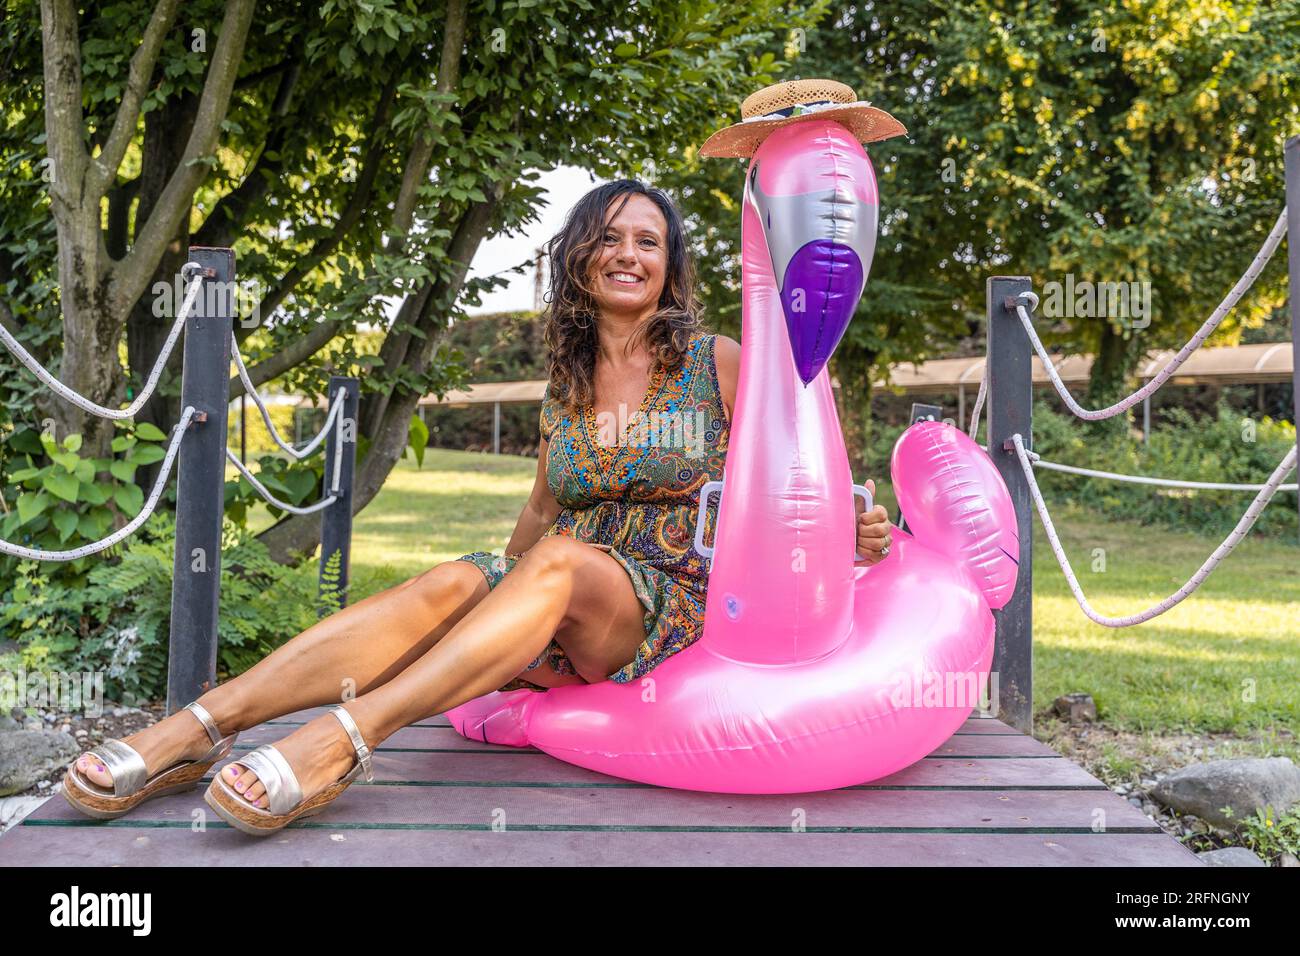 Porträt einer schönen Frau mittleren Alters, die auf einem aufblasbaren, pinkfarbenen Flamingo-Spielzeug sitzt Stockfoto